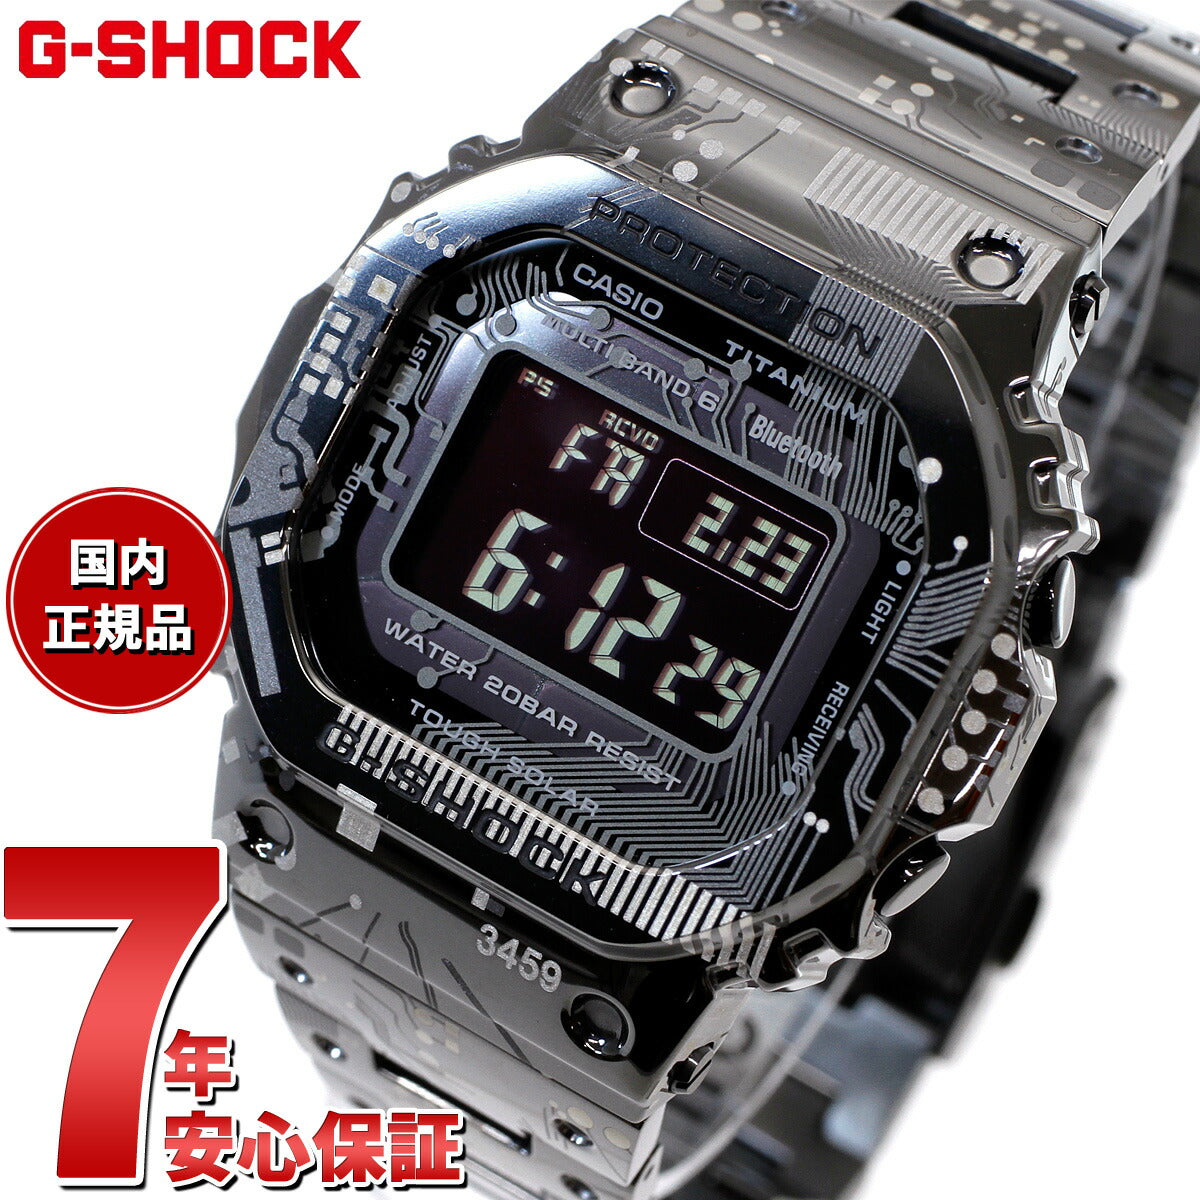 【定番人気新品】5年保証付き CASIO カシオ G-SHOCK GMW B5000GD 9JF 腕時計(デジタル)